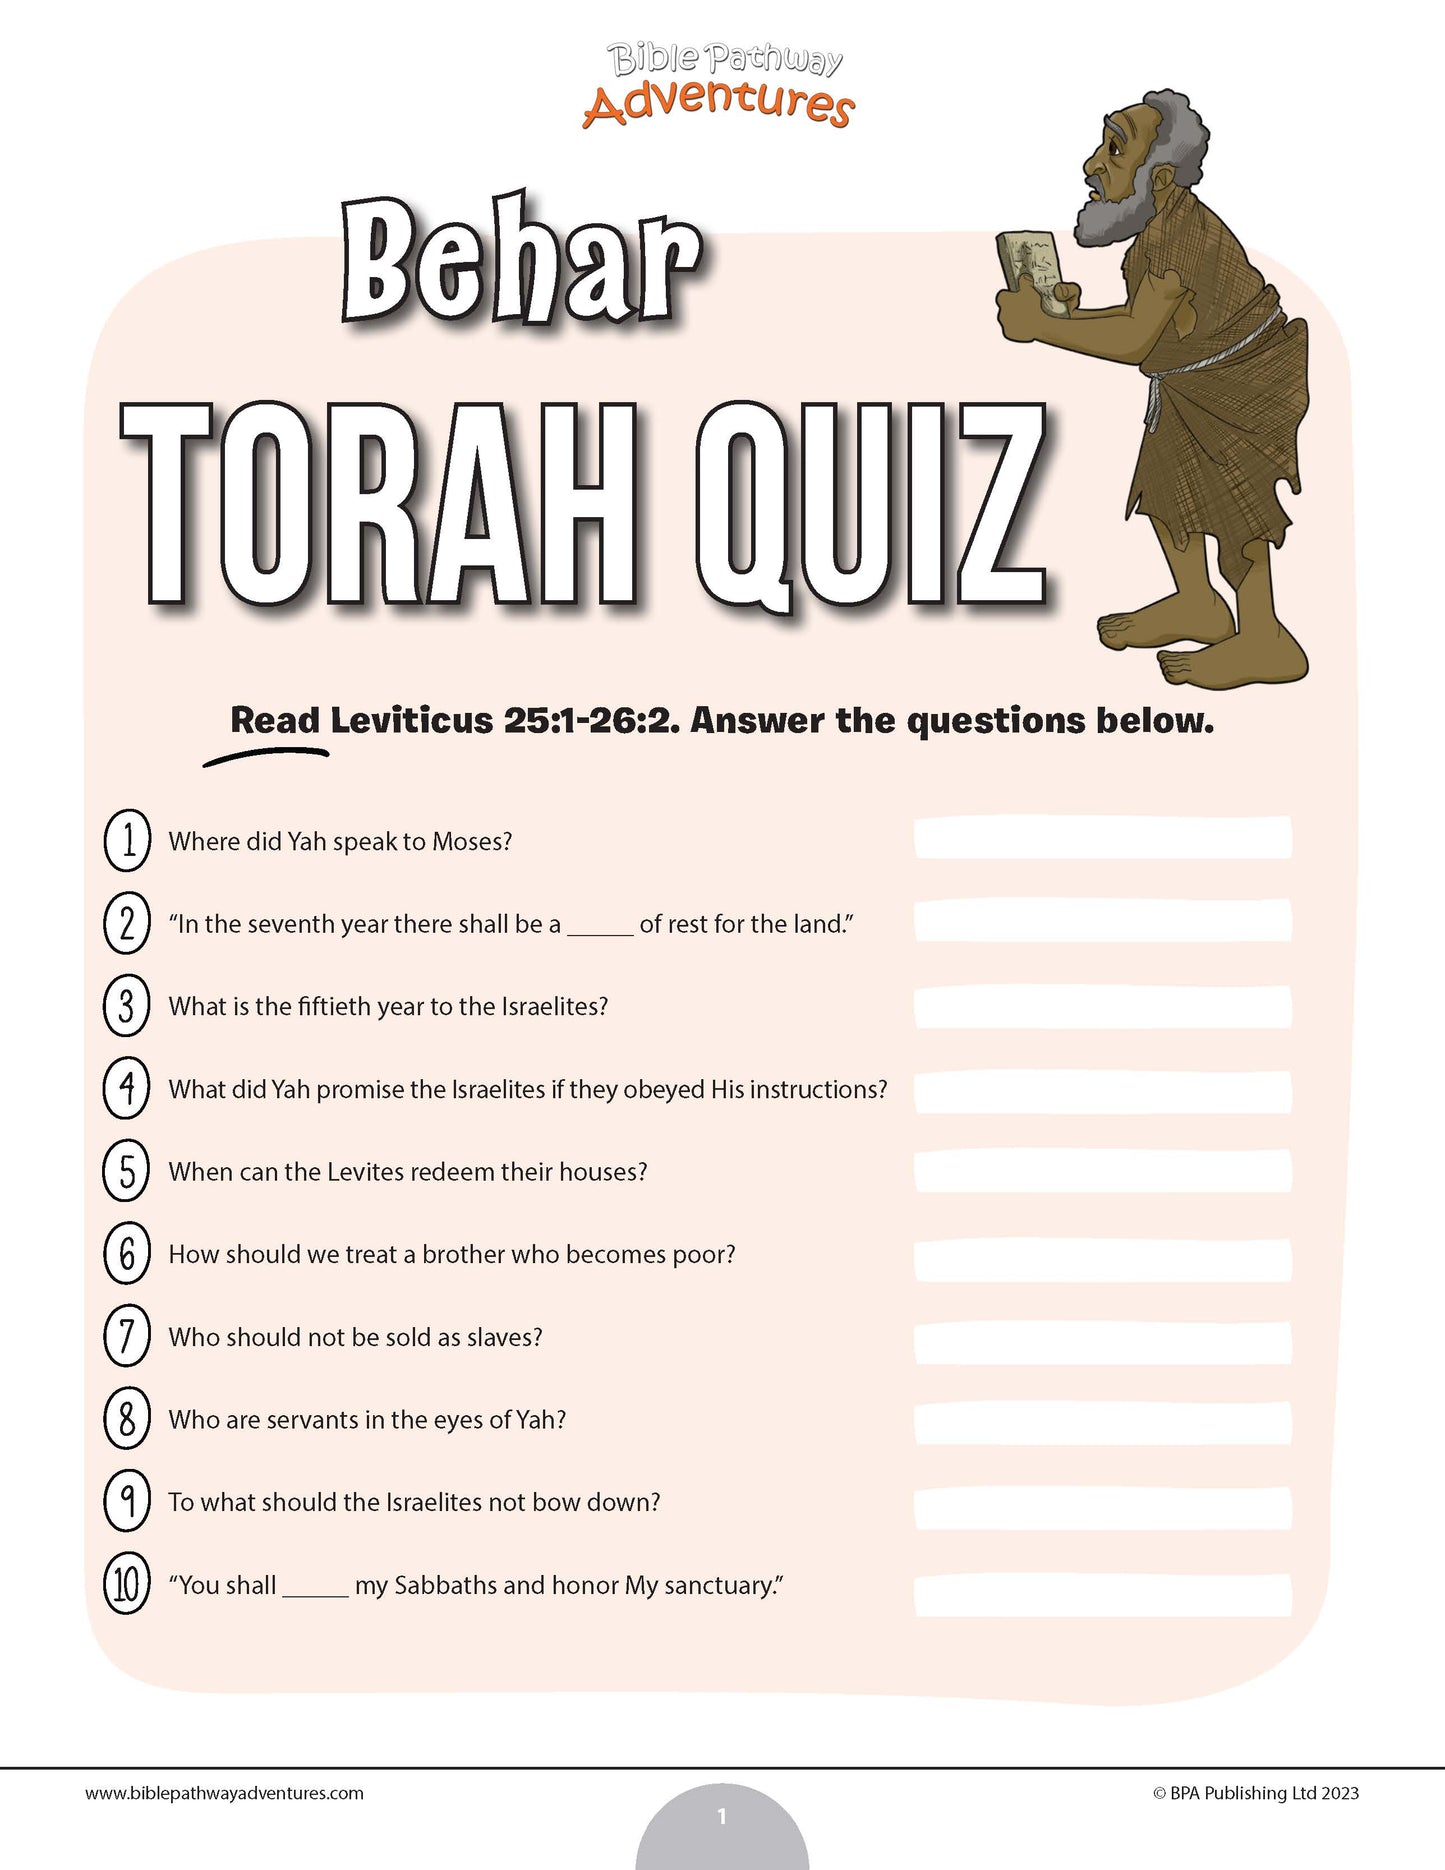 Cuestionario Behar Torá